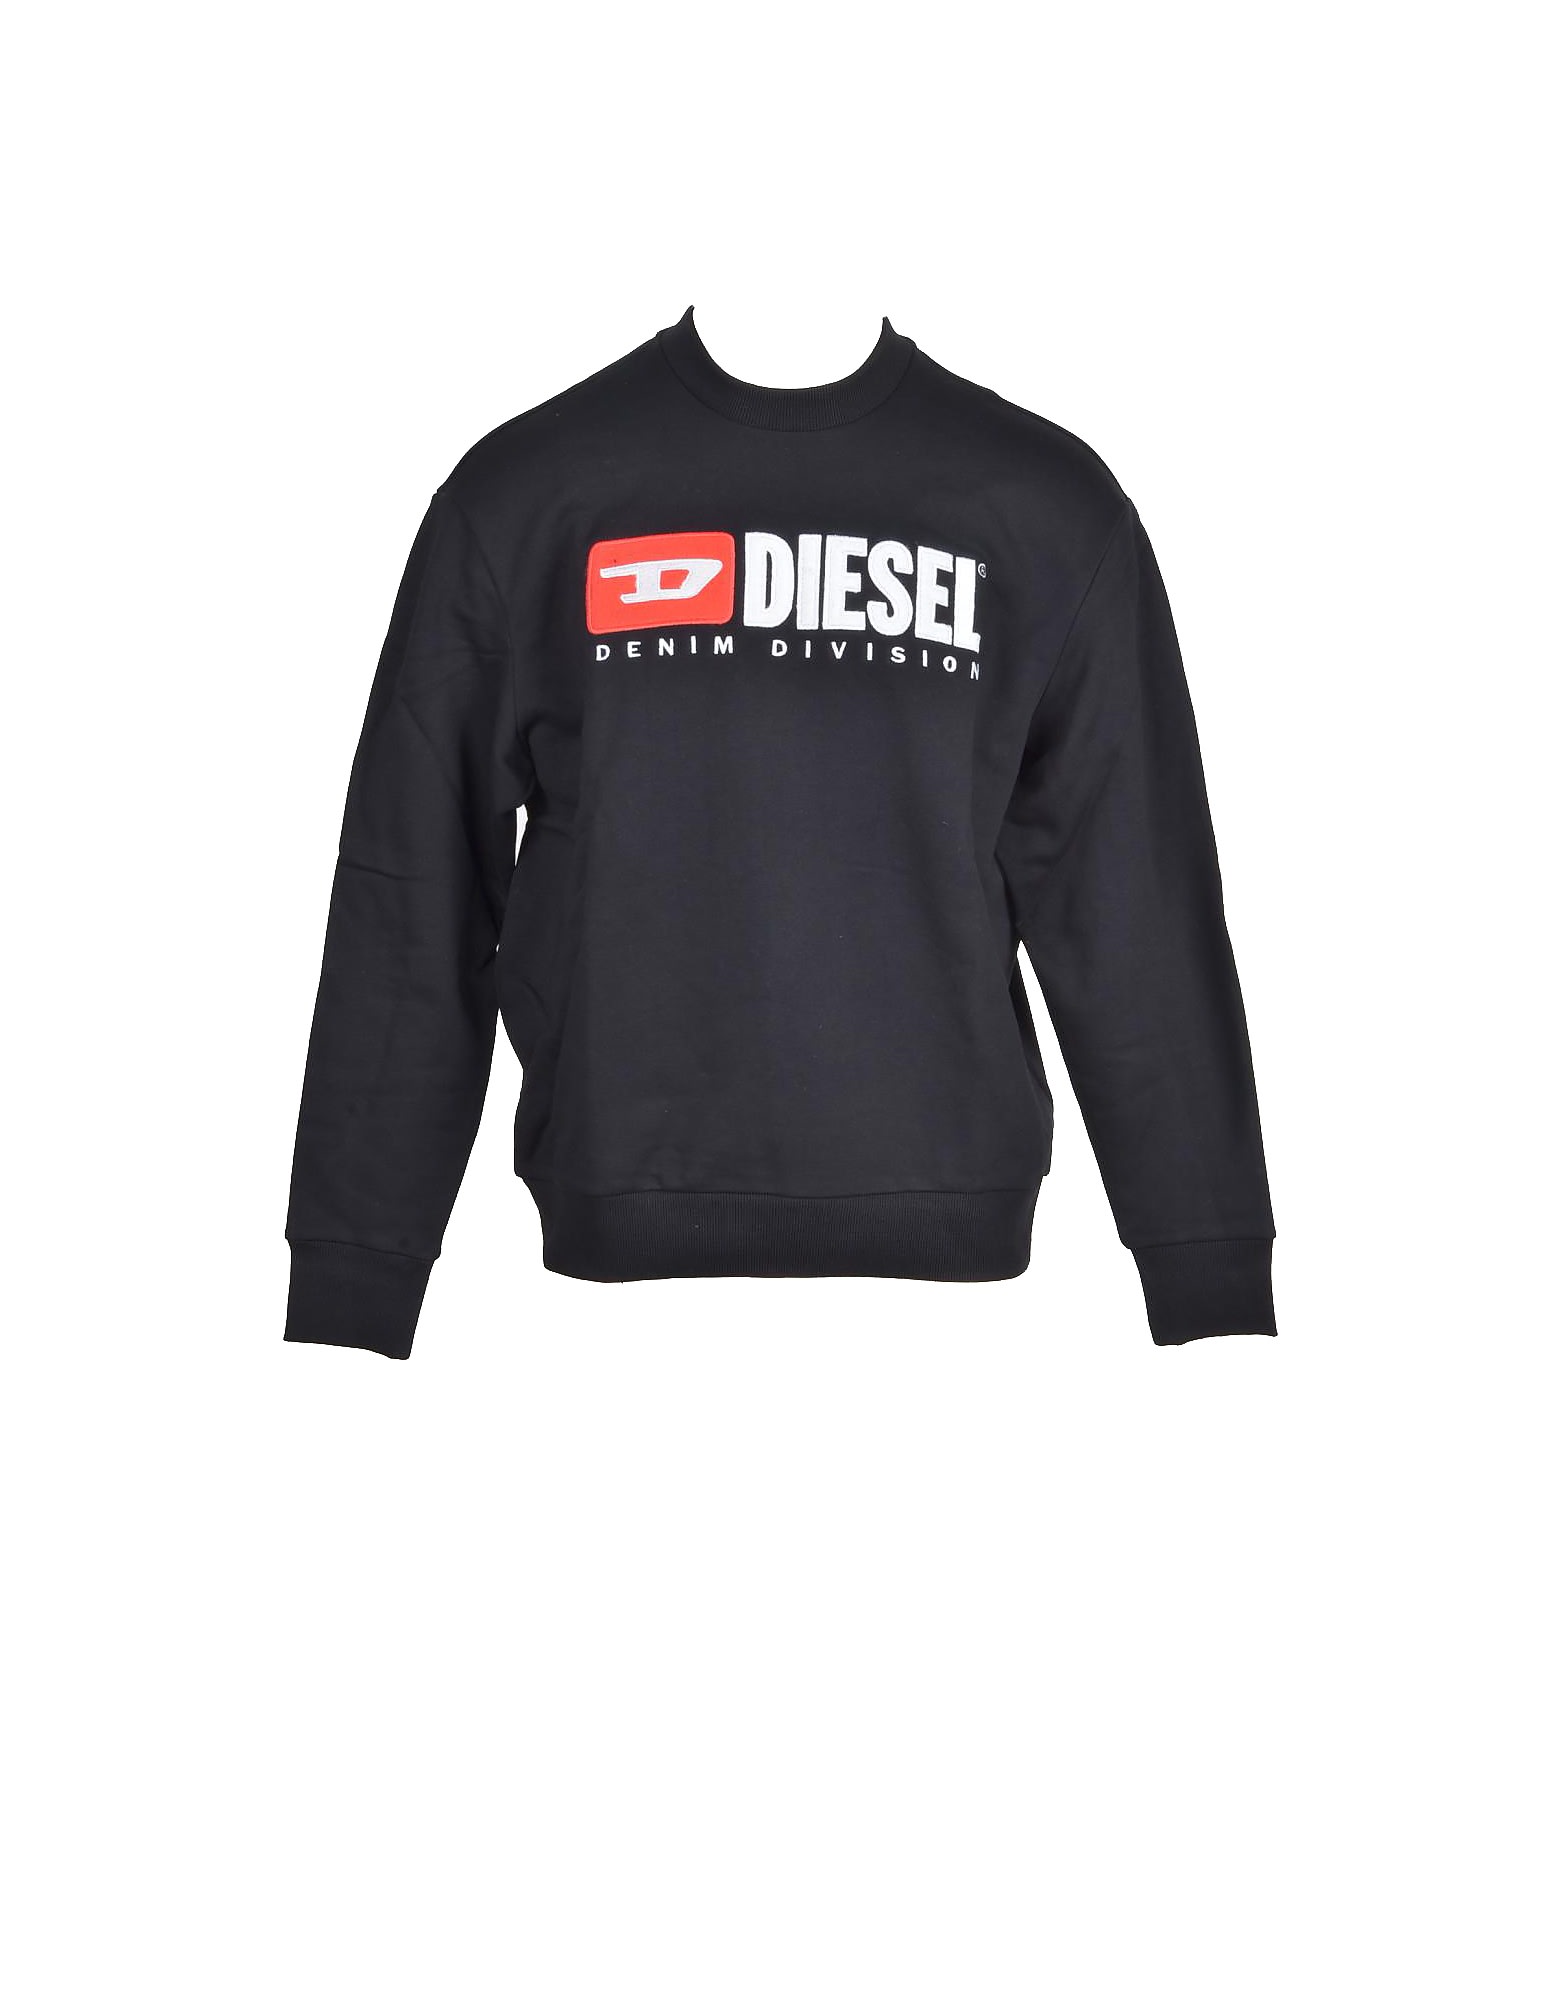 Diesel Mens Black Sweatshirt